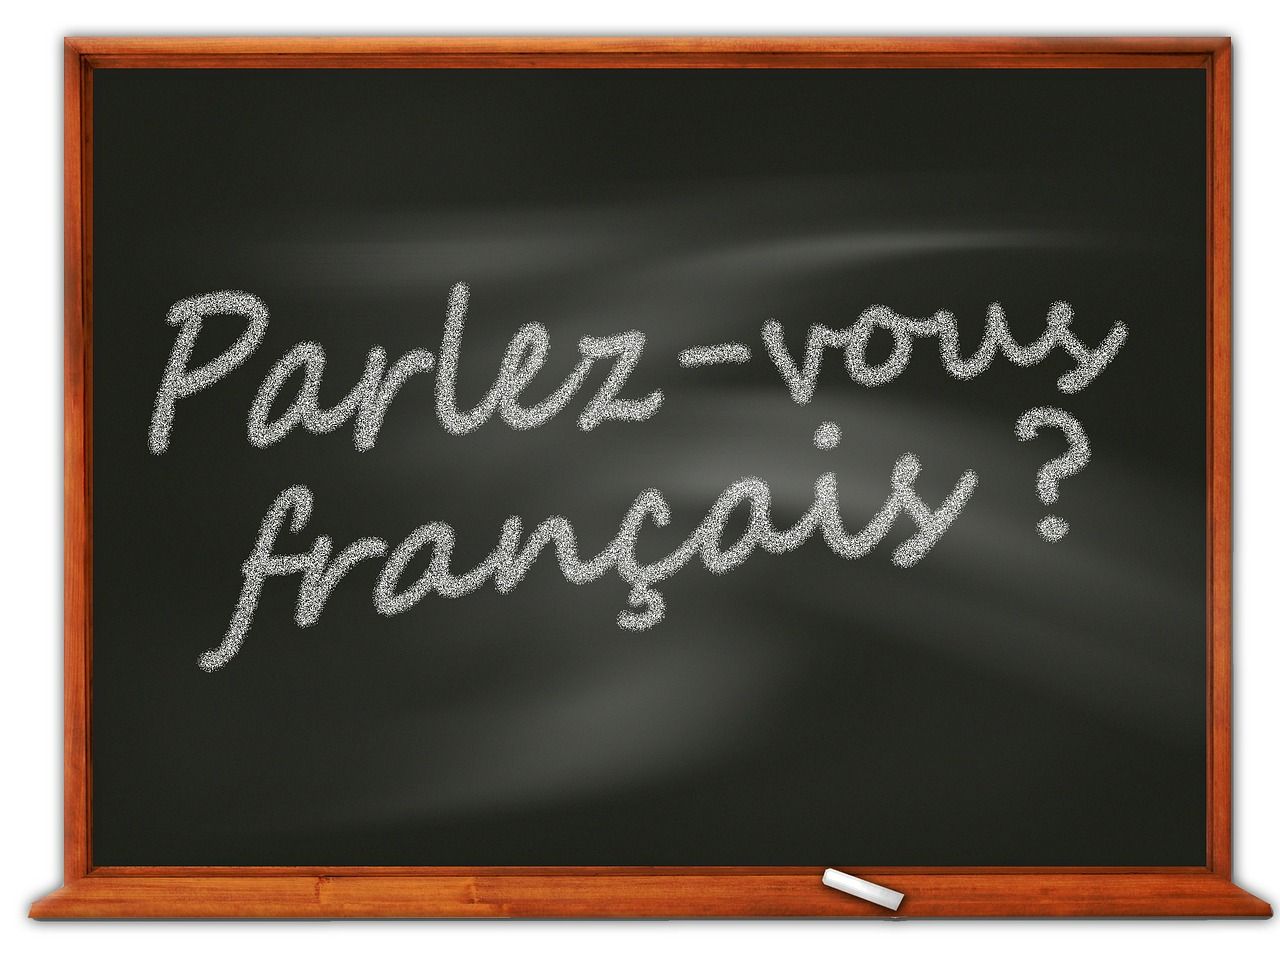 Jak skutecznie nauczyć się francuskiego?